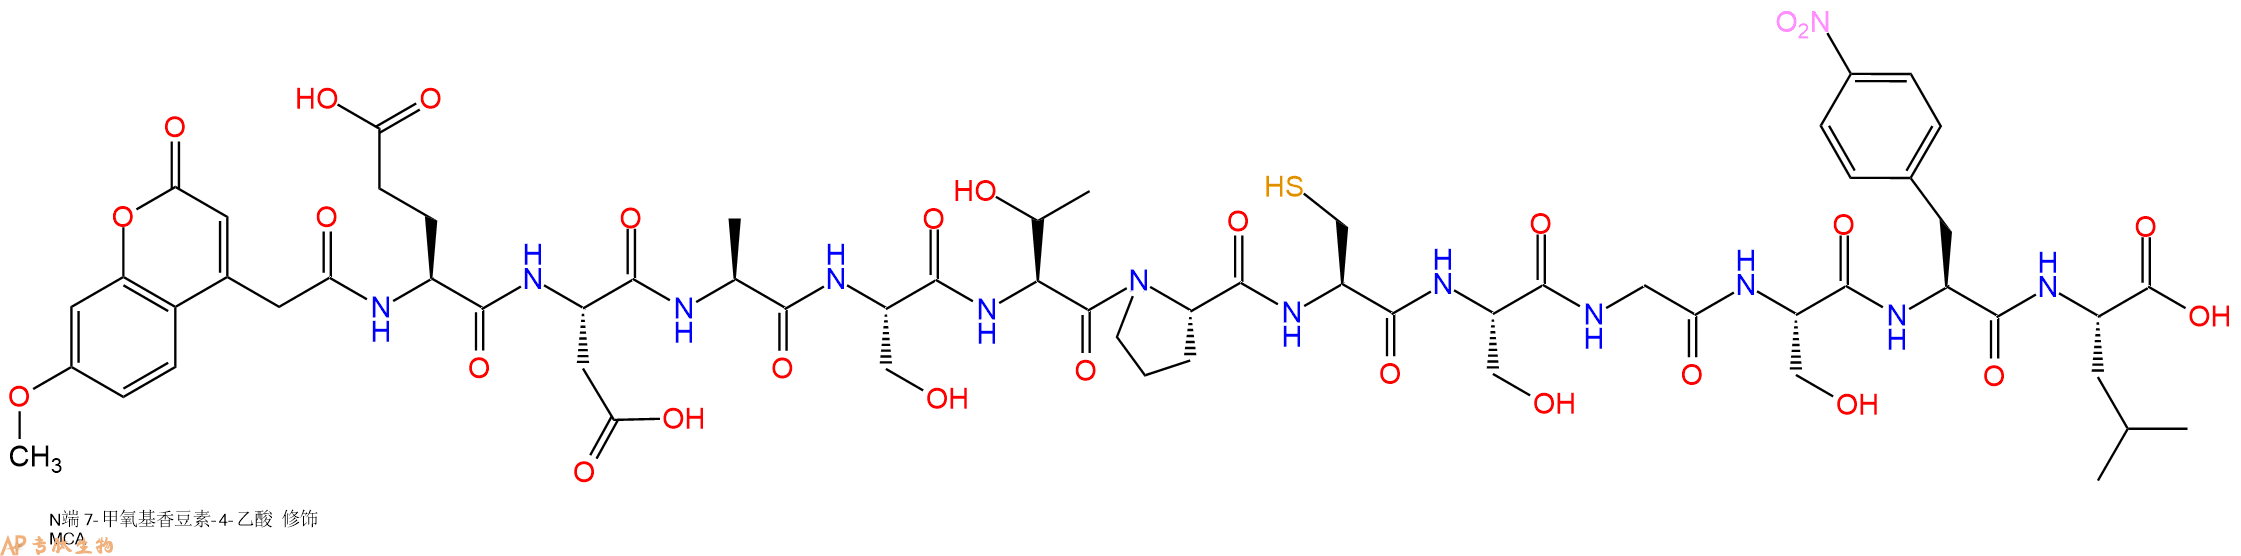 专肽生物产品Mca-Glu-Asp-Ala-Ser-Thr-Pro-Cys-Ser-Gly-Ser-p-nitr